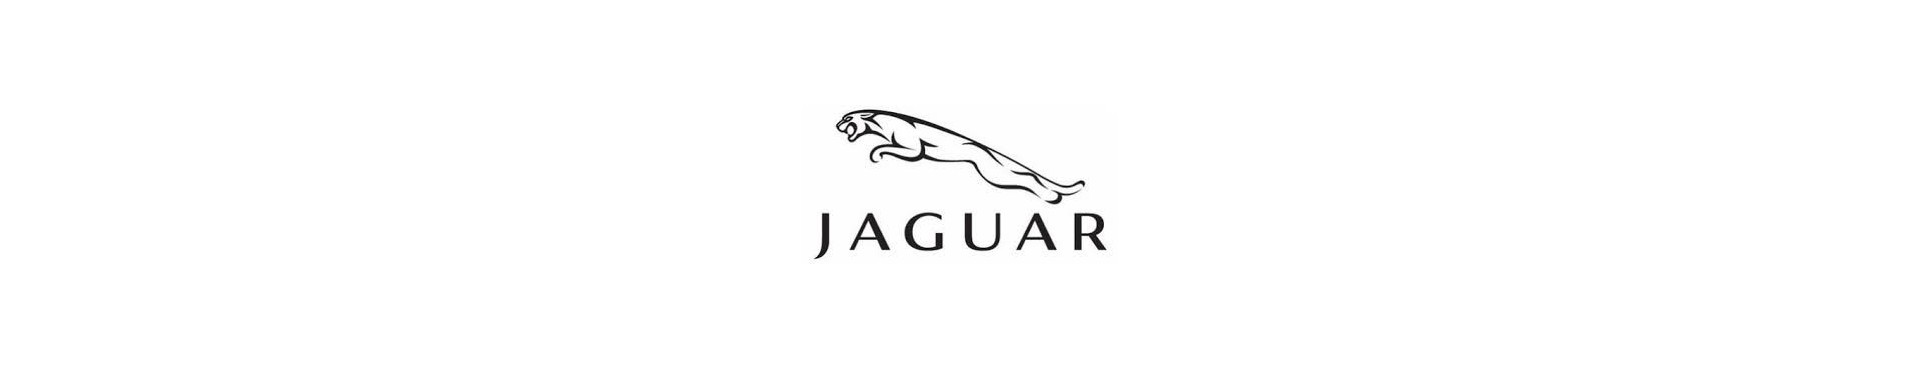 Pour Jaguar